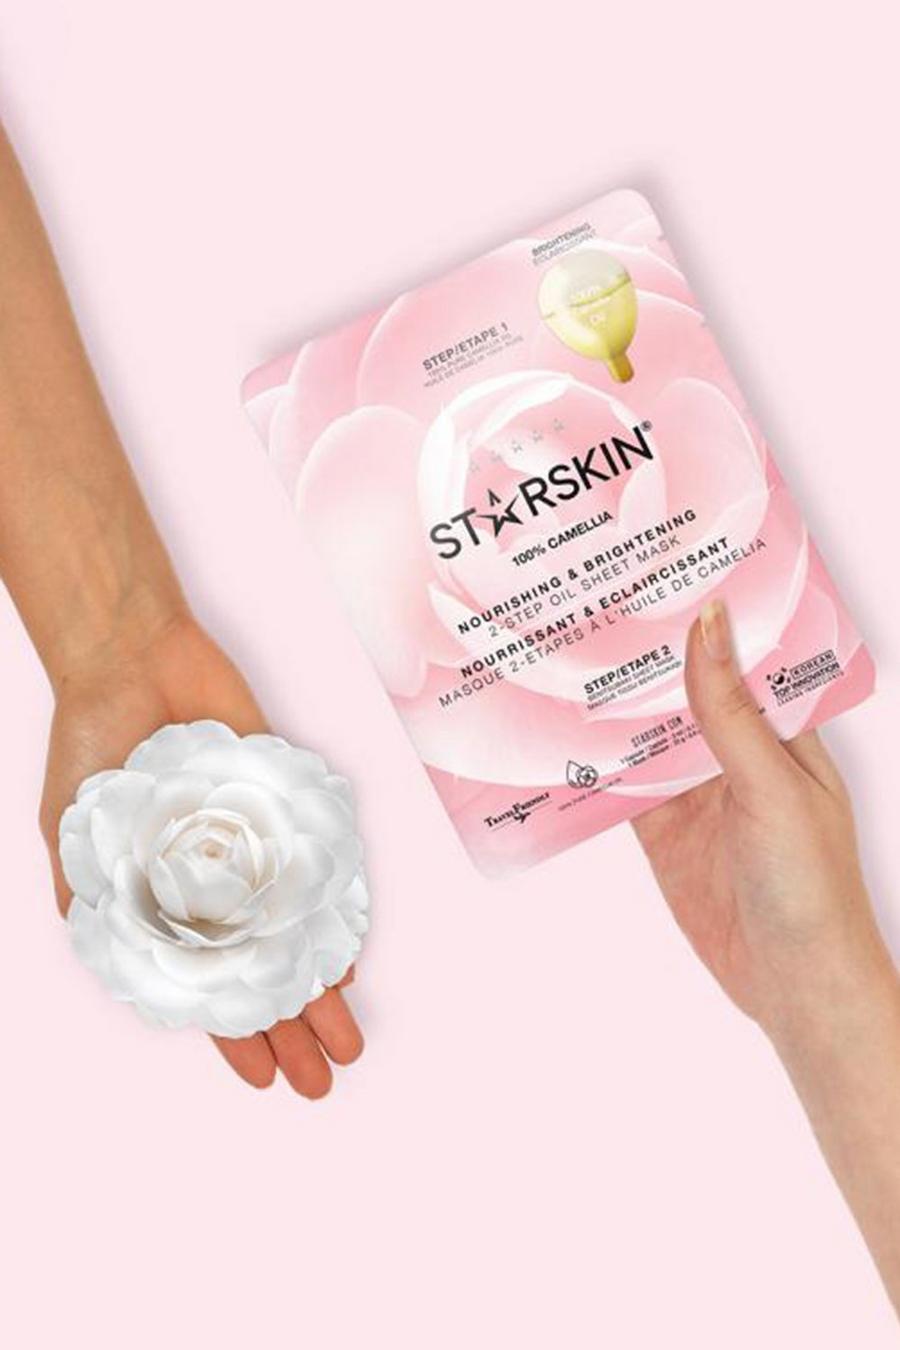 Starskin - Masque nourissant et éclaircissant, Baby pink